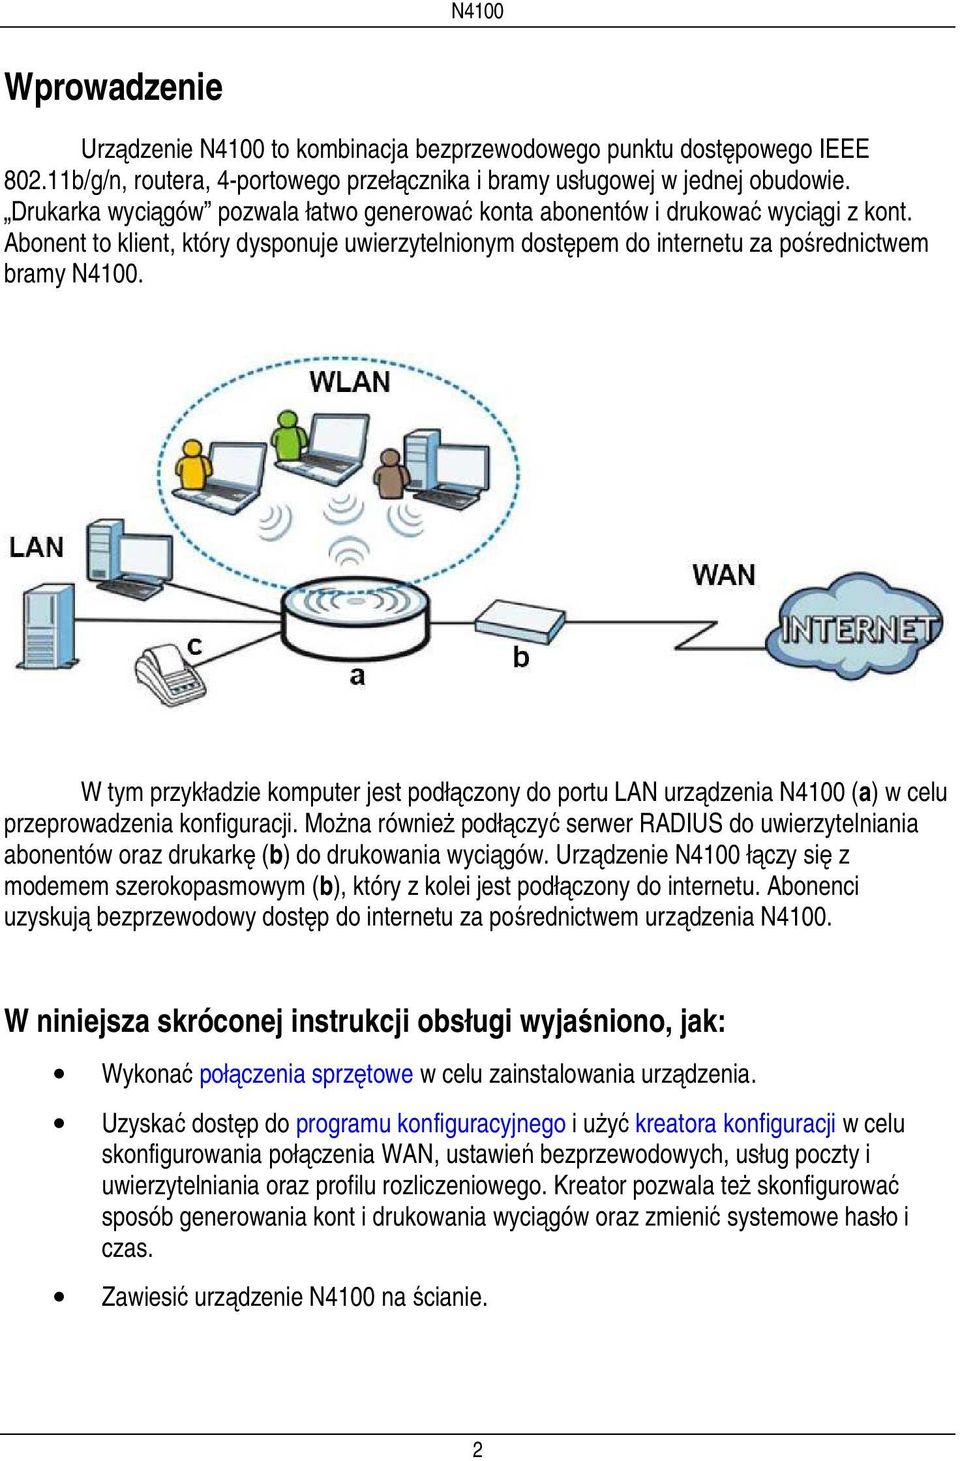 W tym przykładzie komputer jest podłączony do portu LAN urządzenia N4100 (a) w celu przeprowadzenia konfiguracji.